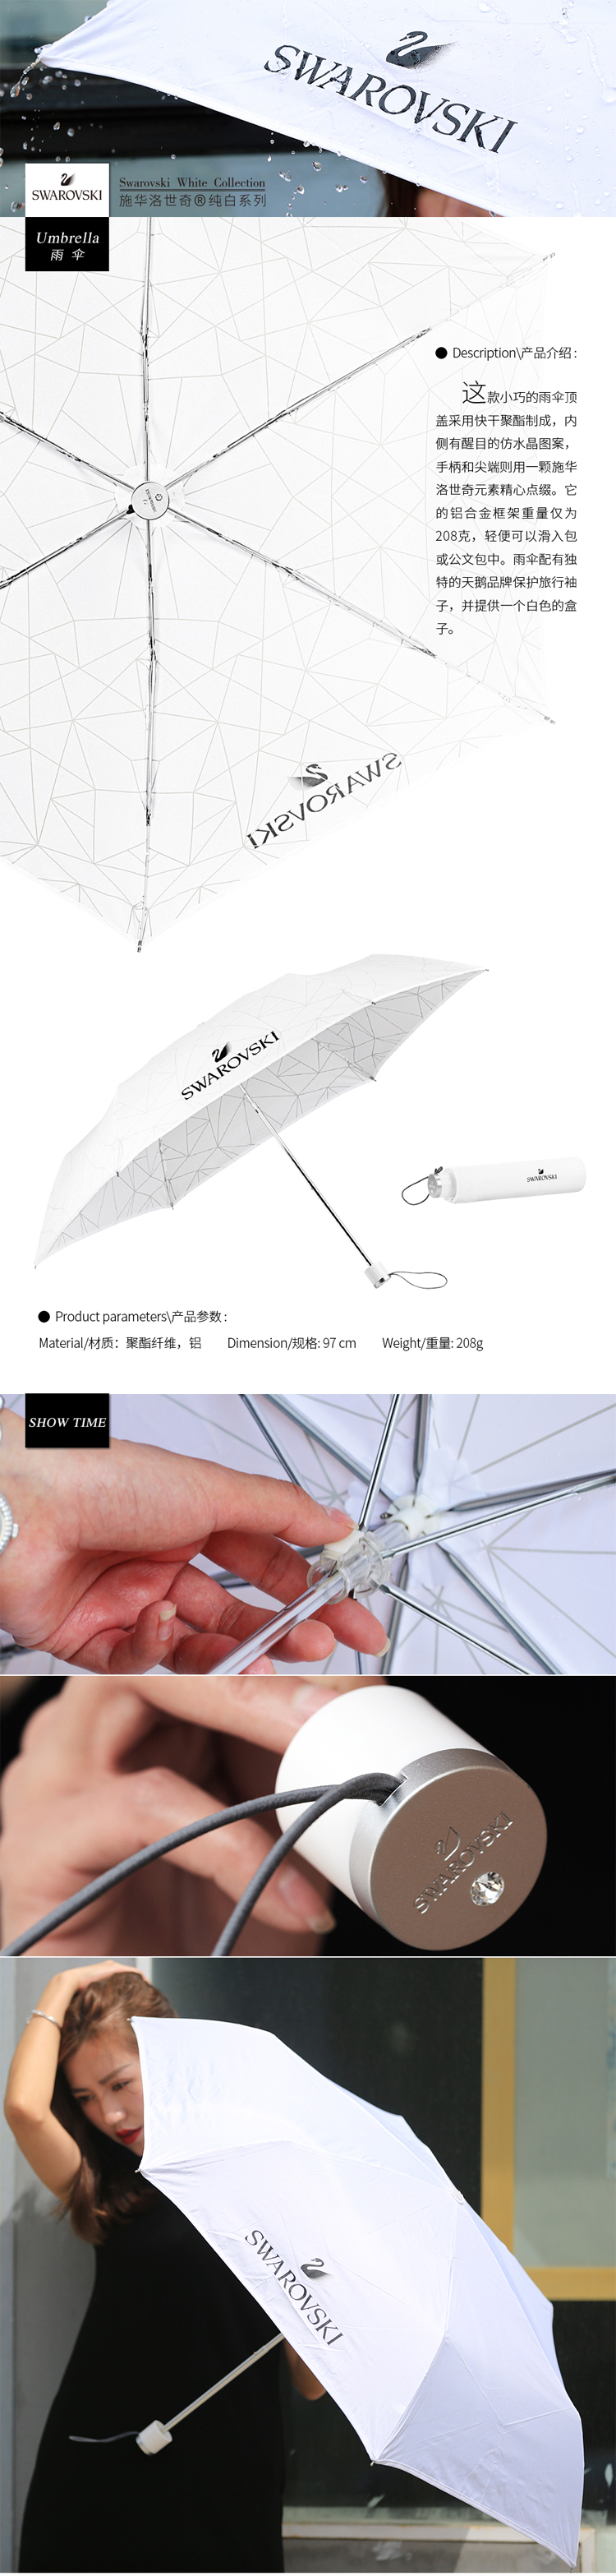 雨伞-白111111111.jpg